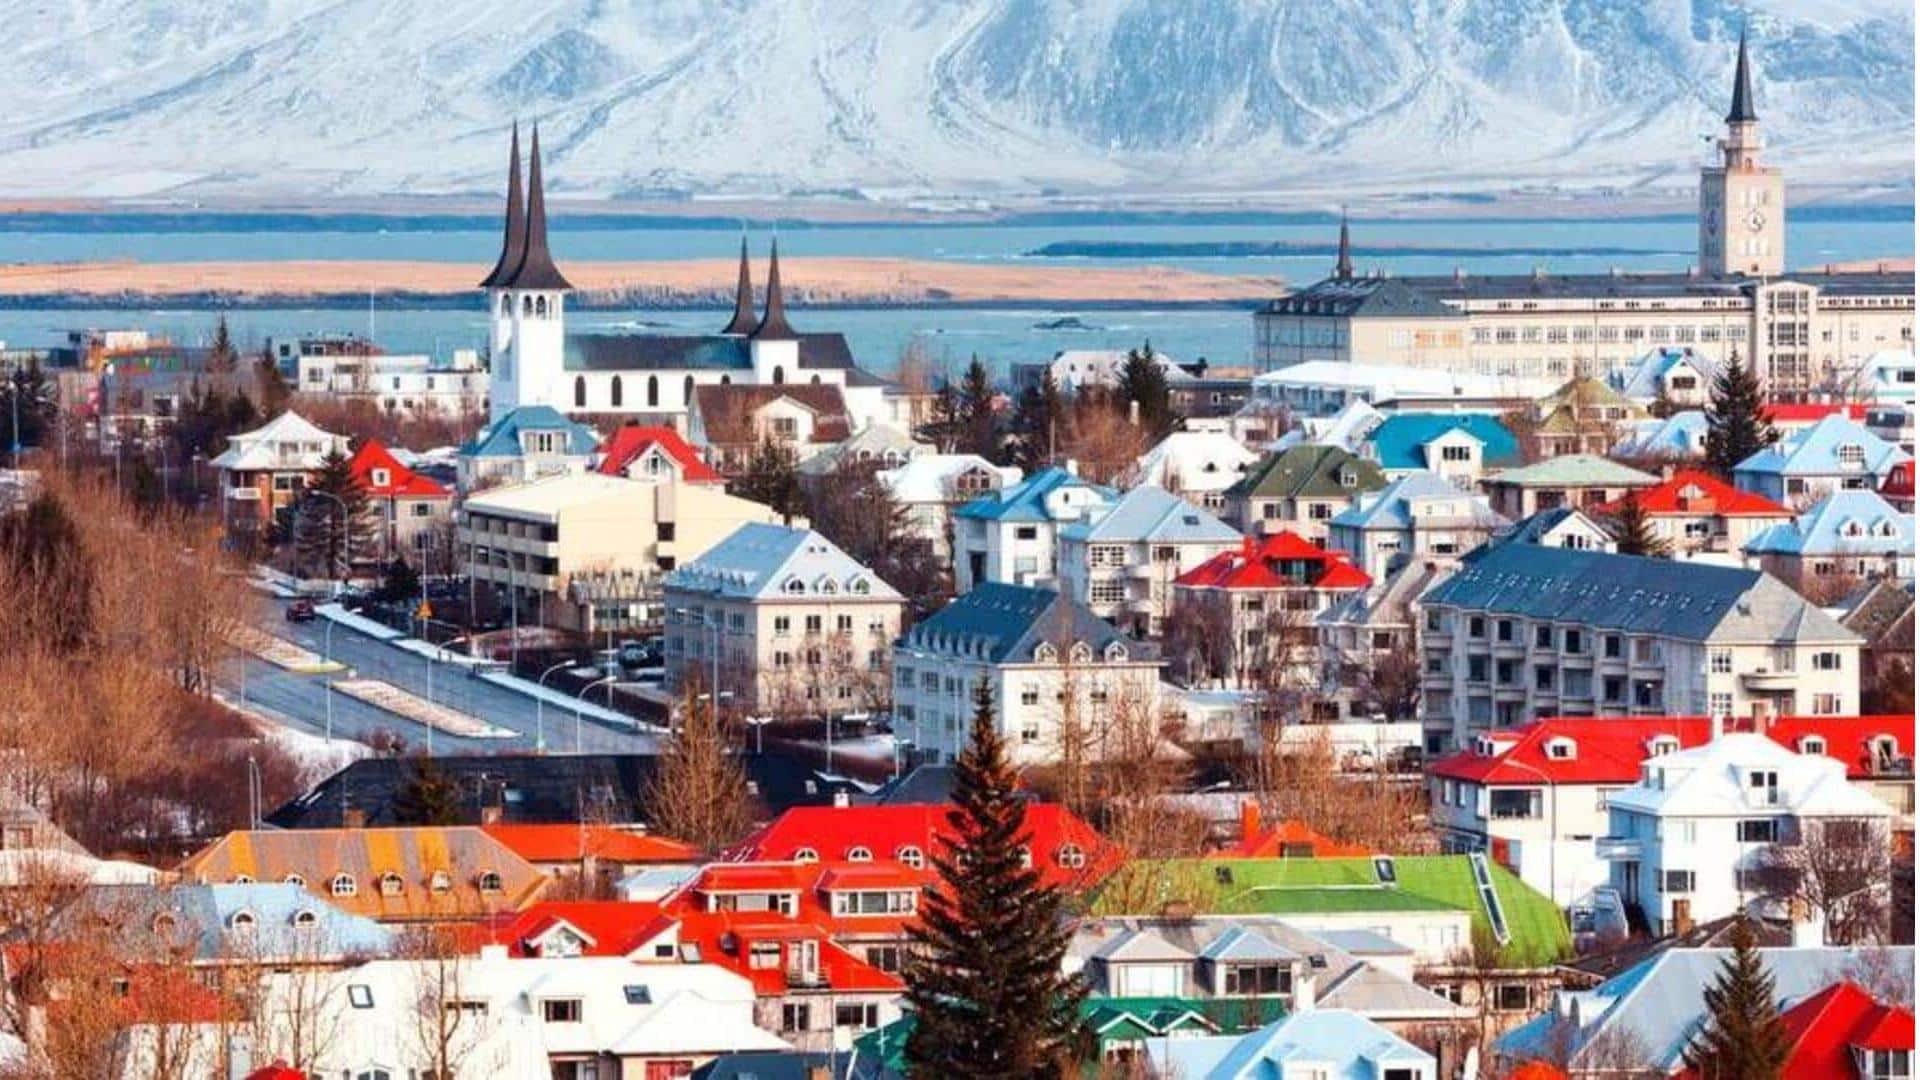 Reykjavik adalah surga bagi pecinta alam dan pencari kesenangan